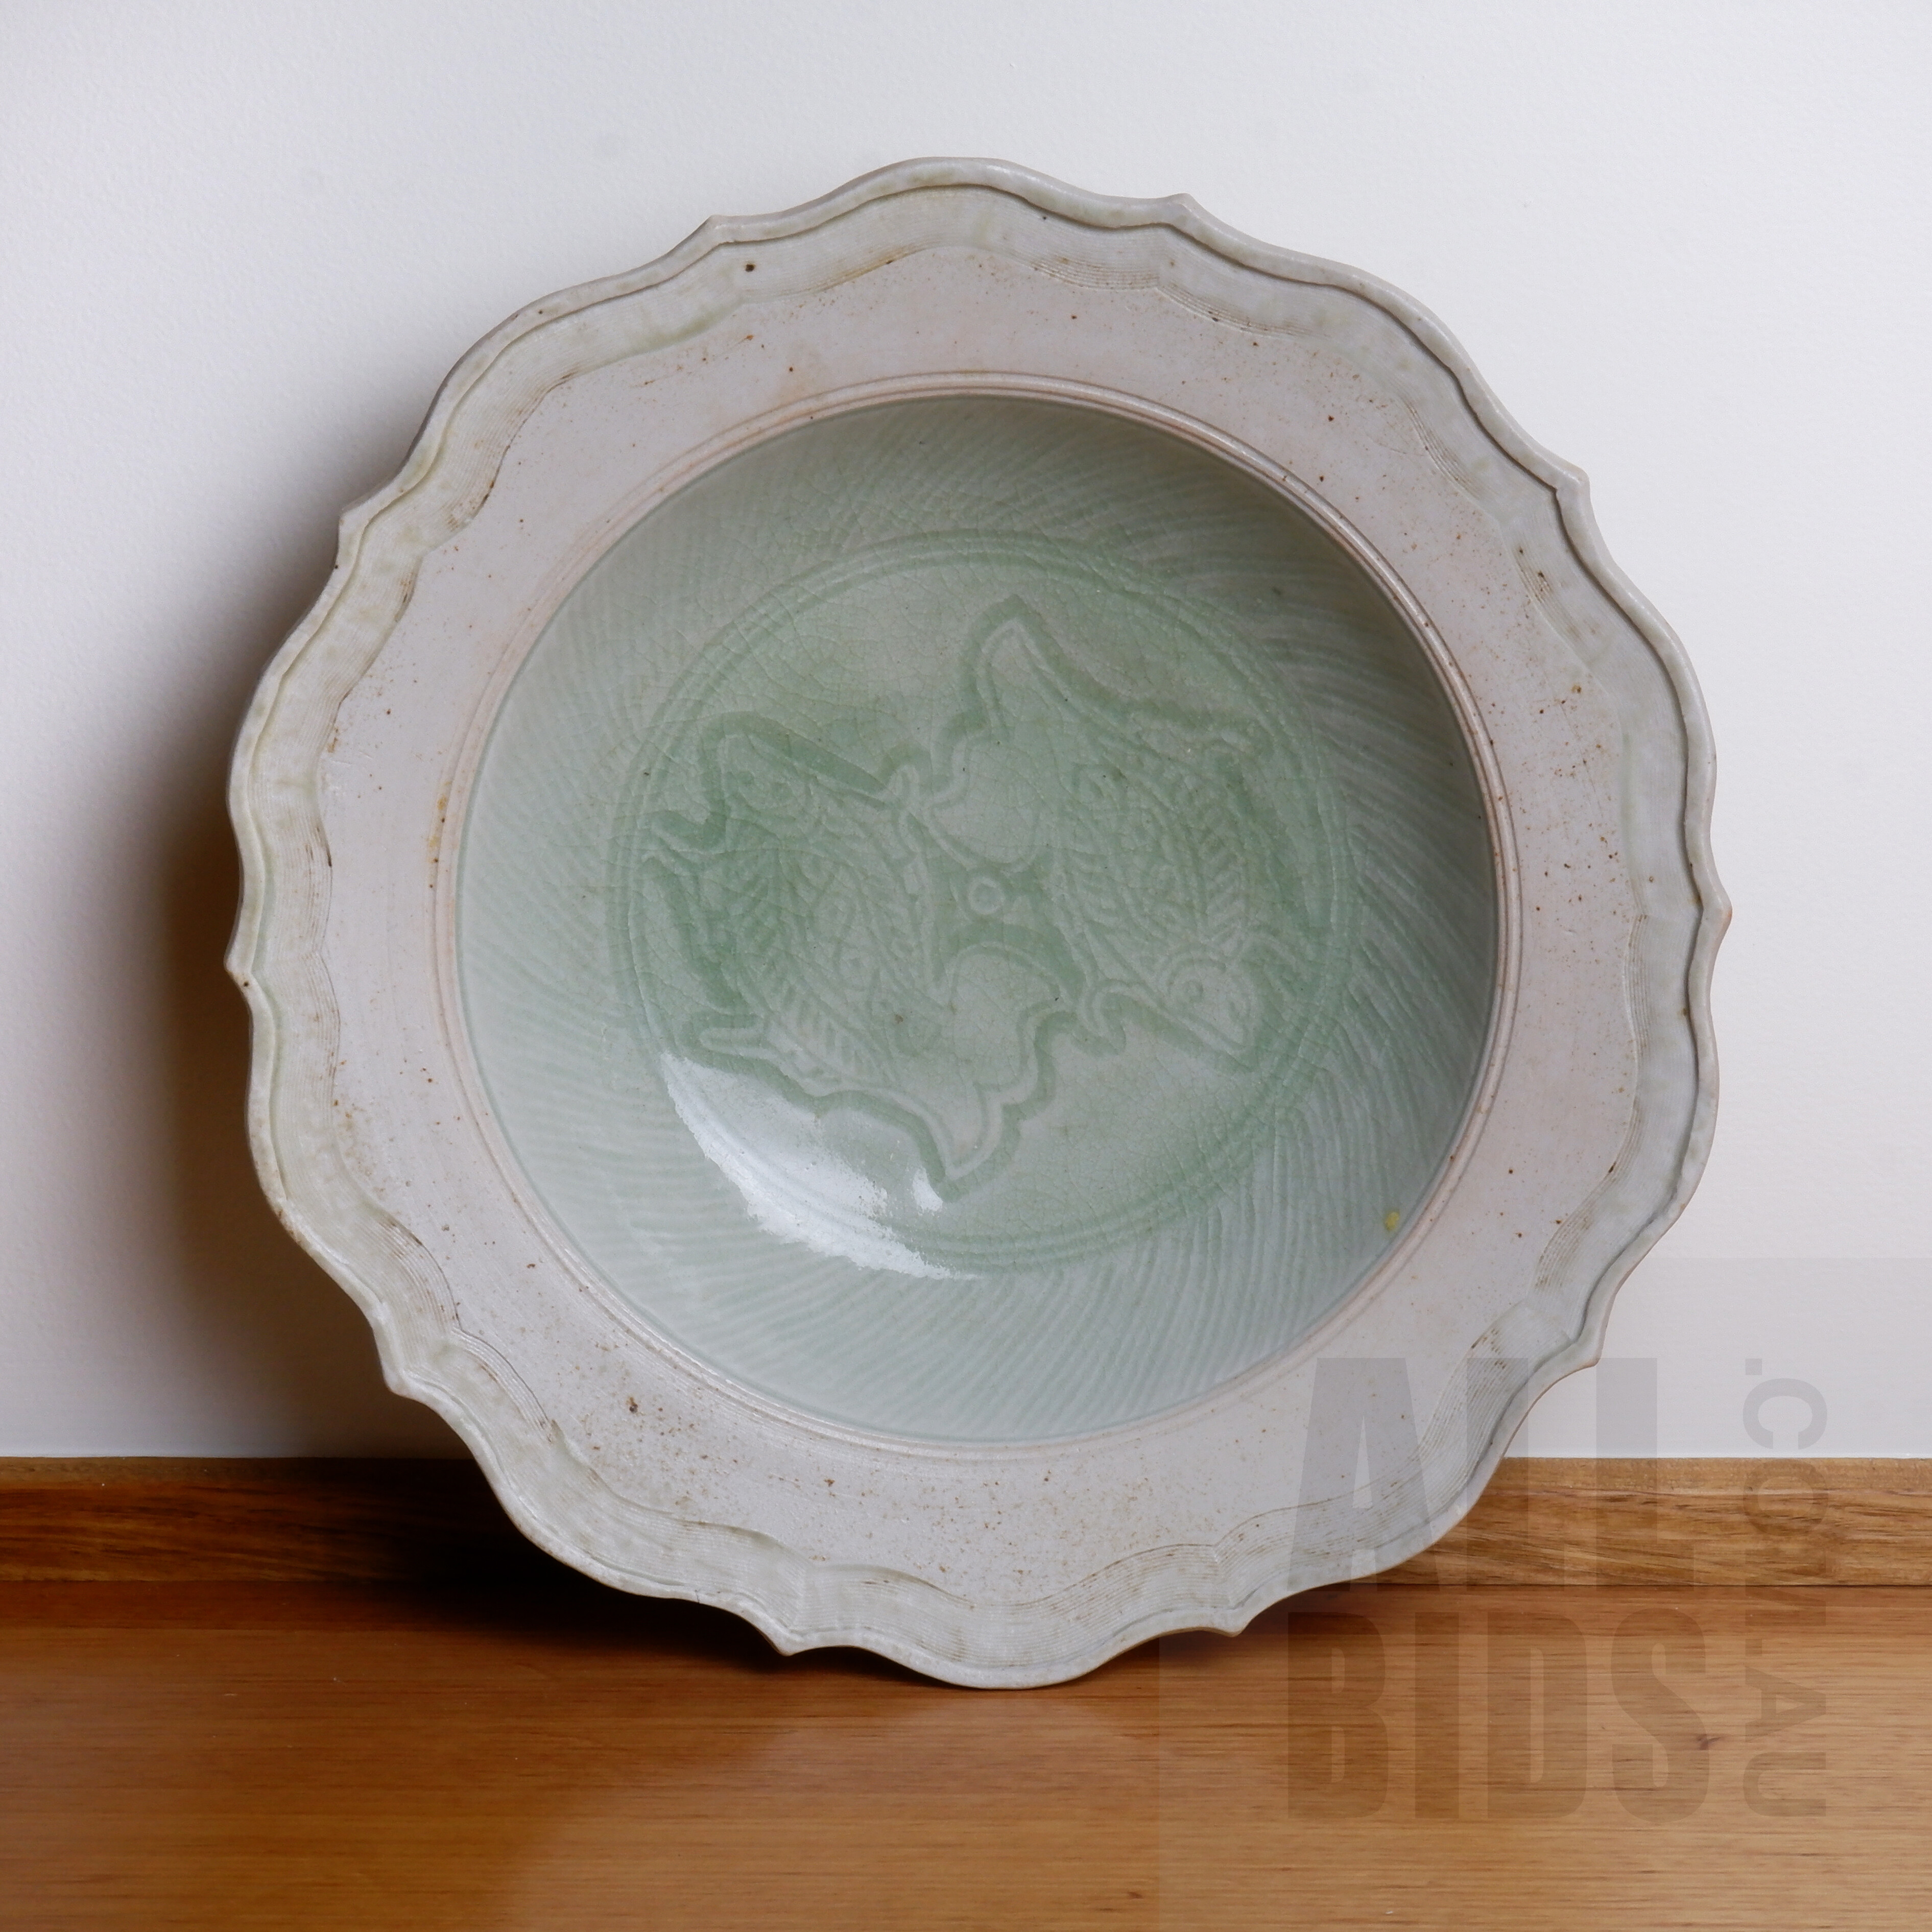 'Quality Australian Studio Ceramic Bowl with Celadon Glaze'